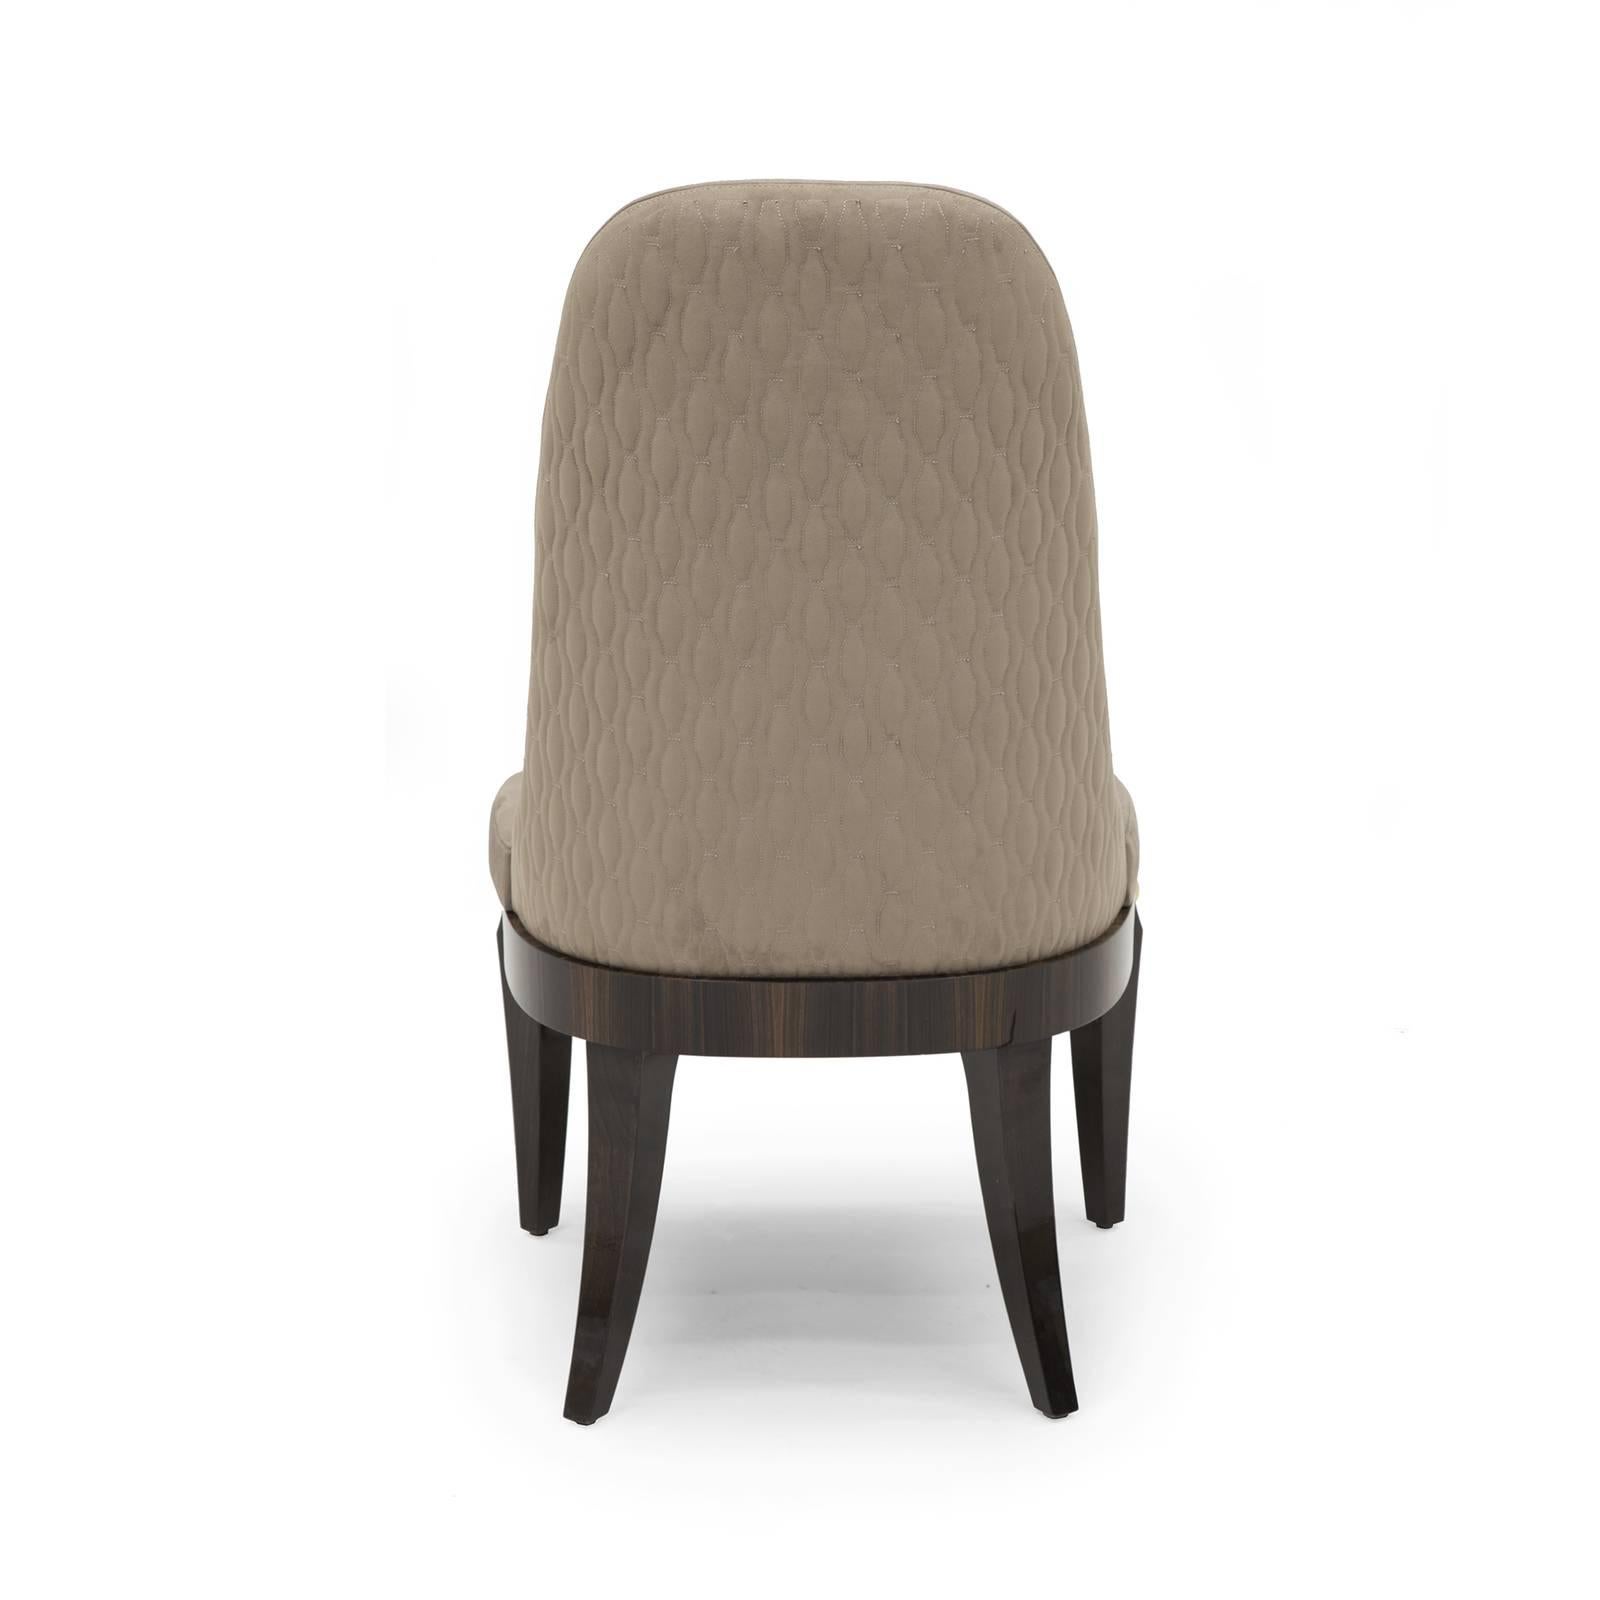 Dieser Stuhl zeichnet sich durch seine mühelose Silhouette aus und setzt einen erhabenen Akzent an jedem Esstisch. Der Sitz ist aus furniertem Ebenholz gefertigt und hat eine runde Form mit quadratischer Front, die mit vertikalen Einlagen aus